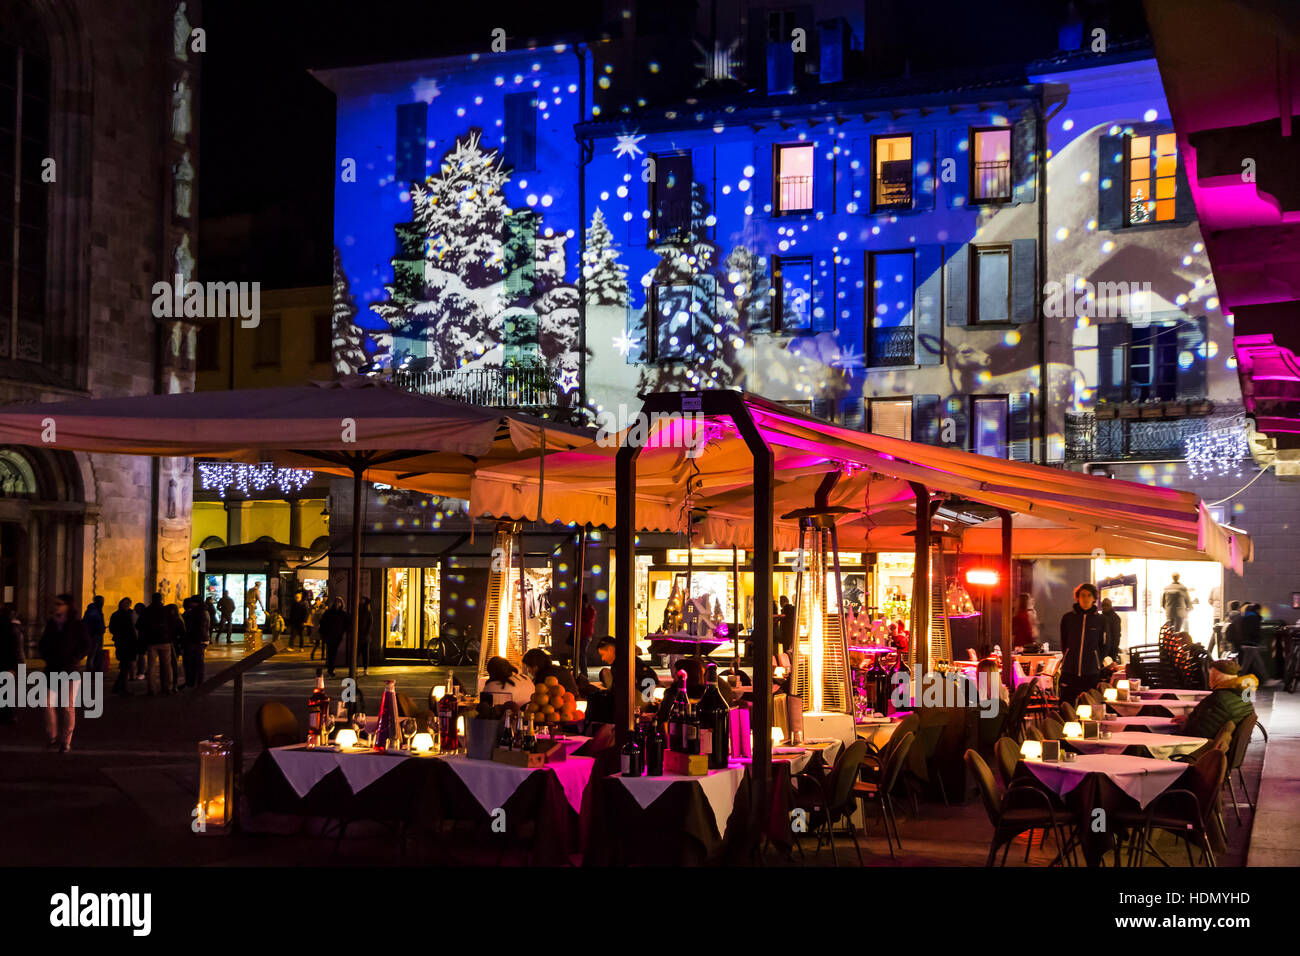 Festa di Natale decorazioni luci su facciate di edifici in Piazza Duomo a Como, Italia Foto Stock